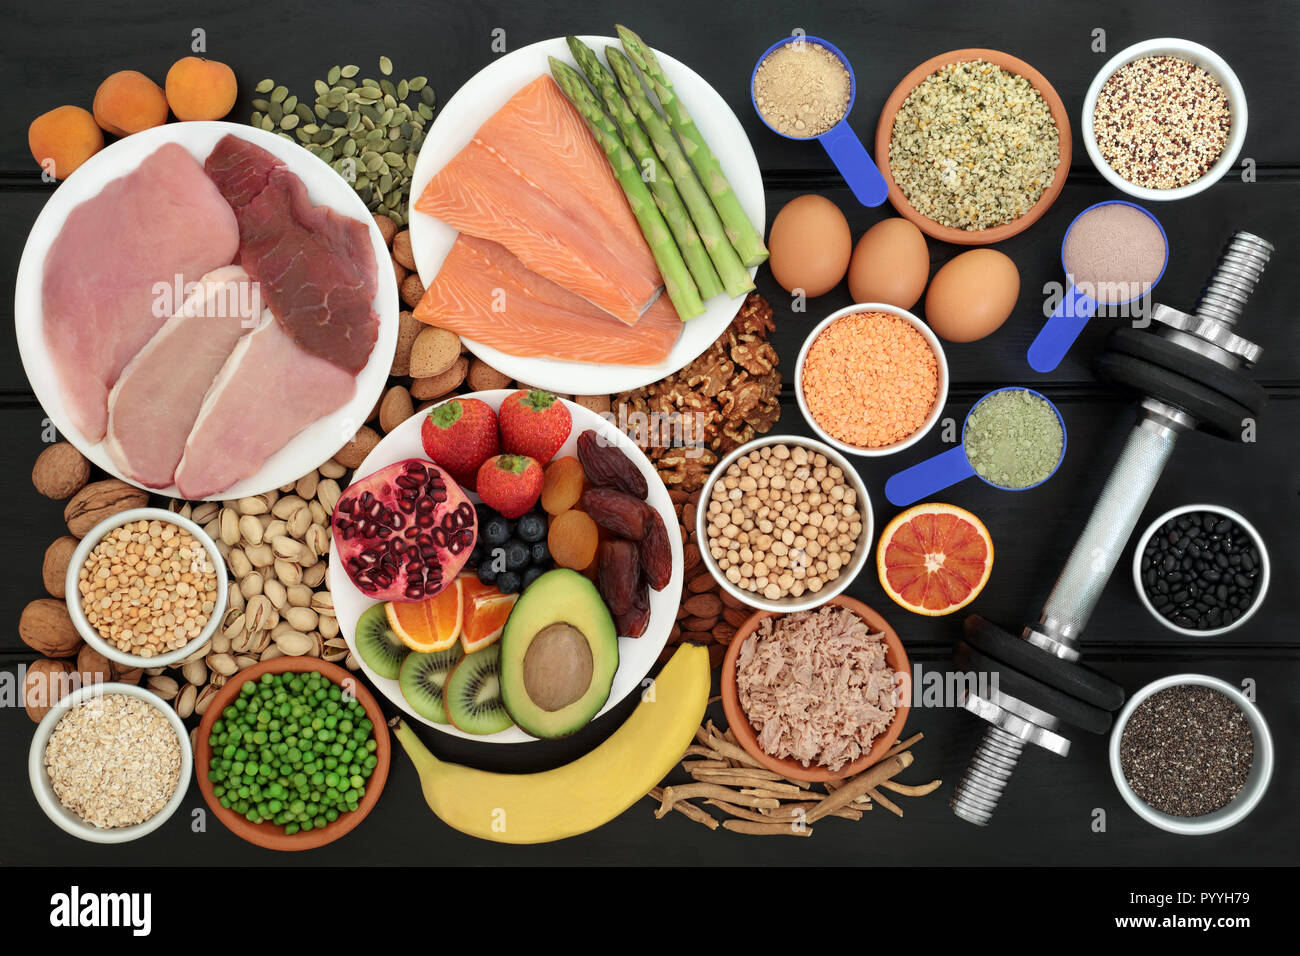 Nourriture santé pour les culturistes en protéines tels que la viande, les produits laitiers, supplément de poudres, grains, céréales, fruits, légumes, herbes, noix et graines. Banque D'Images